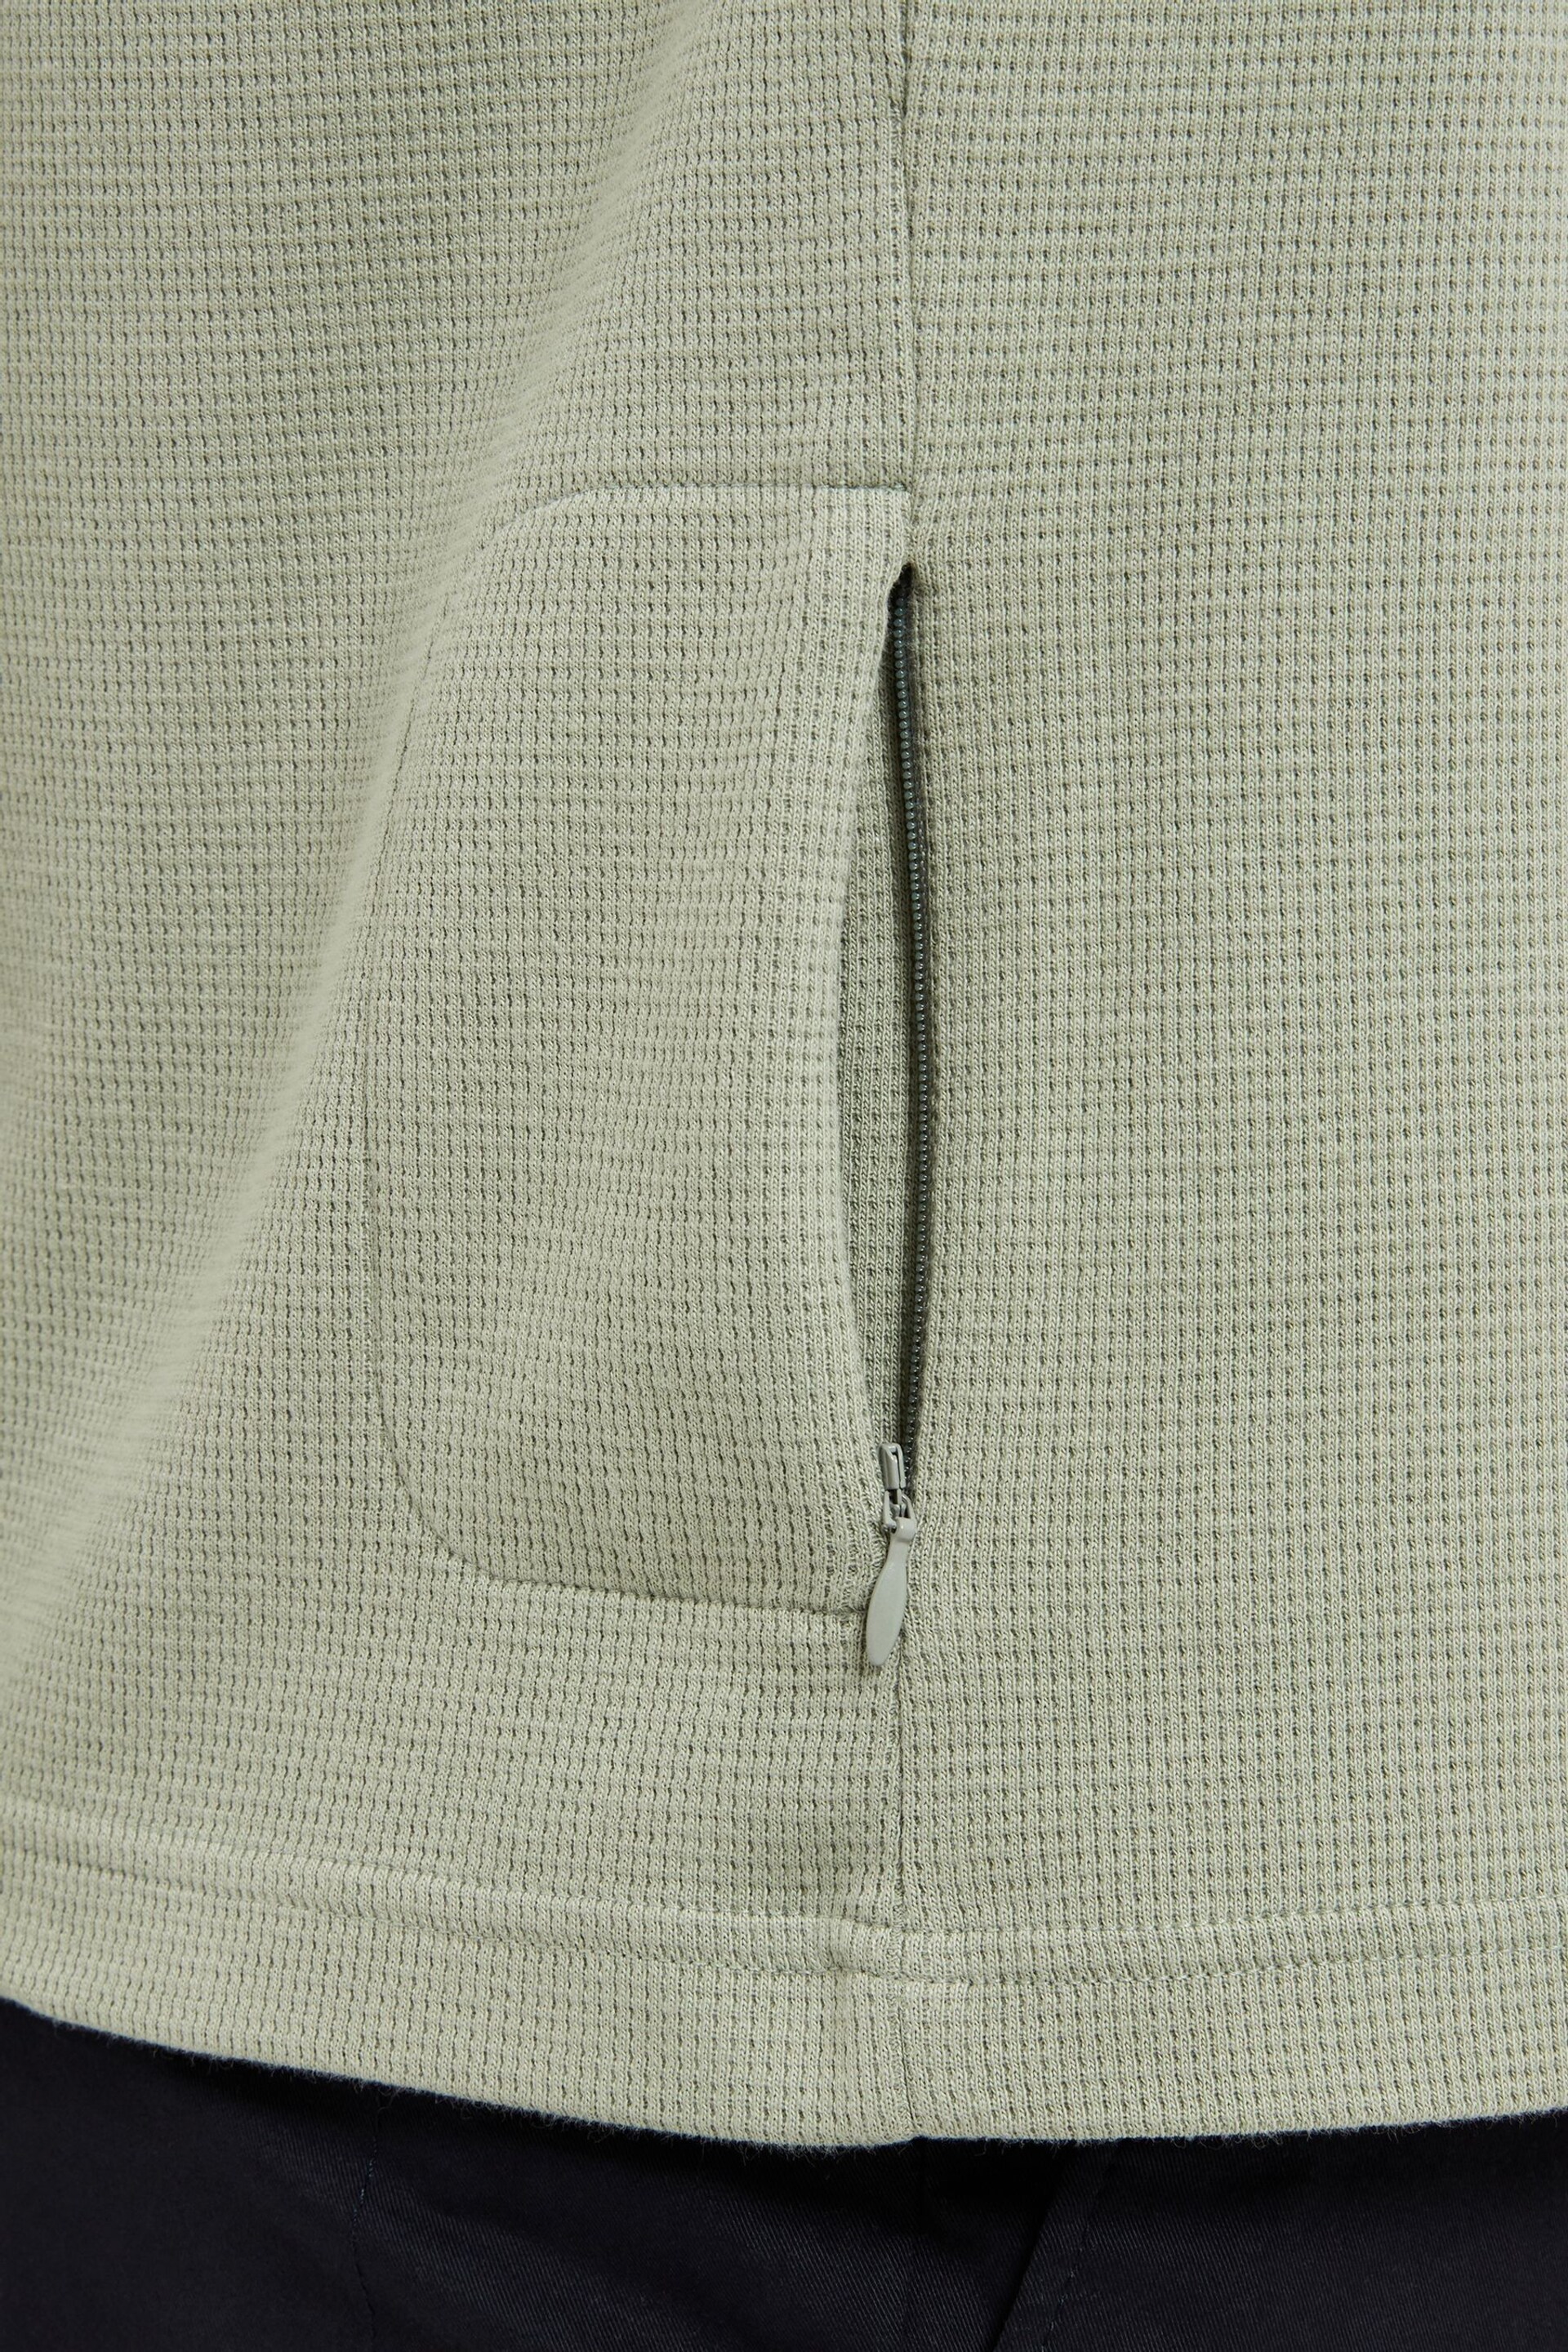 Sealskinz Green Felthorpe Short Sleeve Waffle Polo Shirt - Image 3 of 5